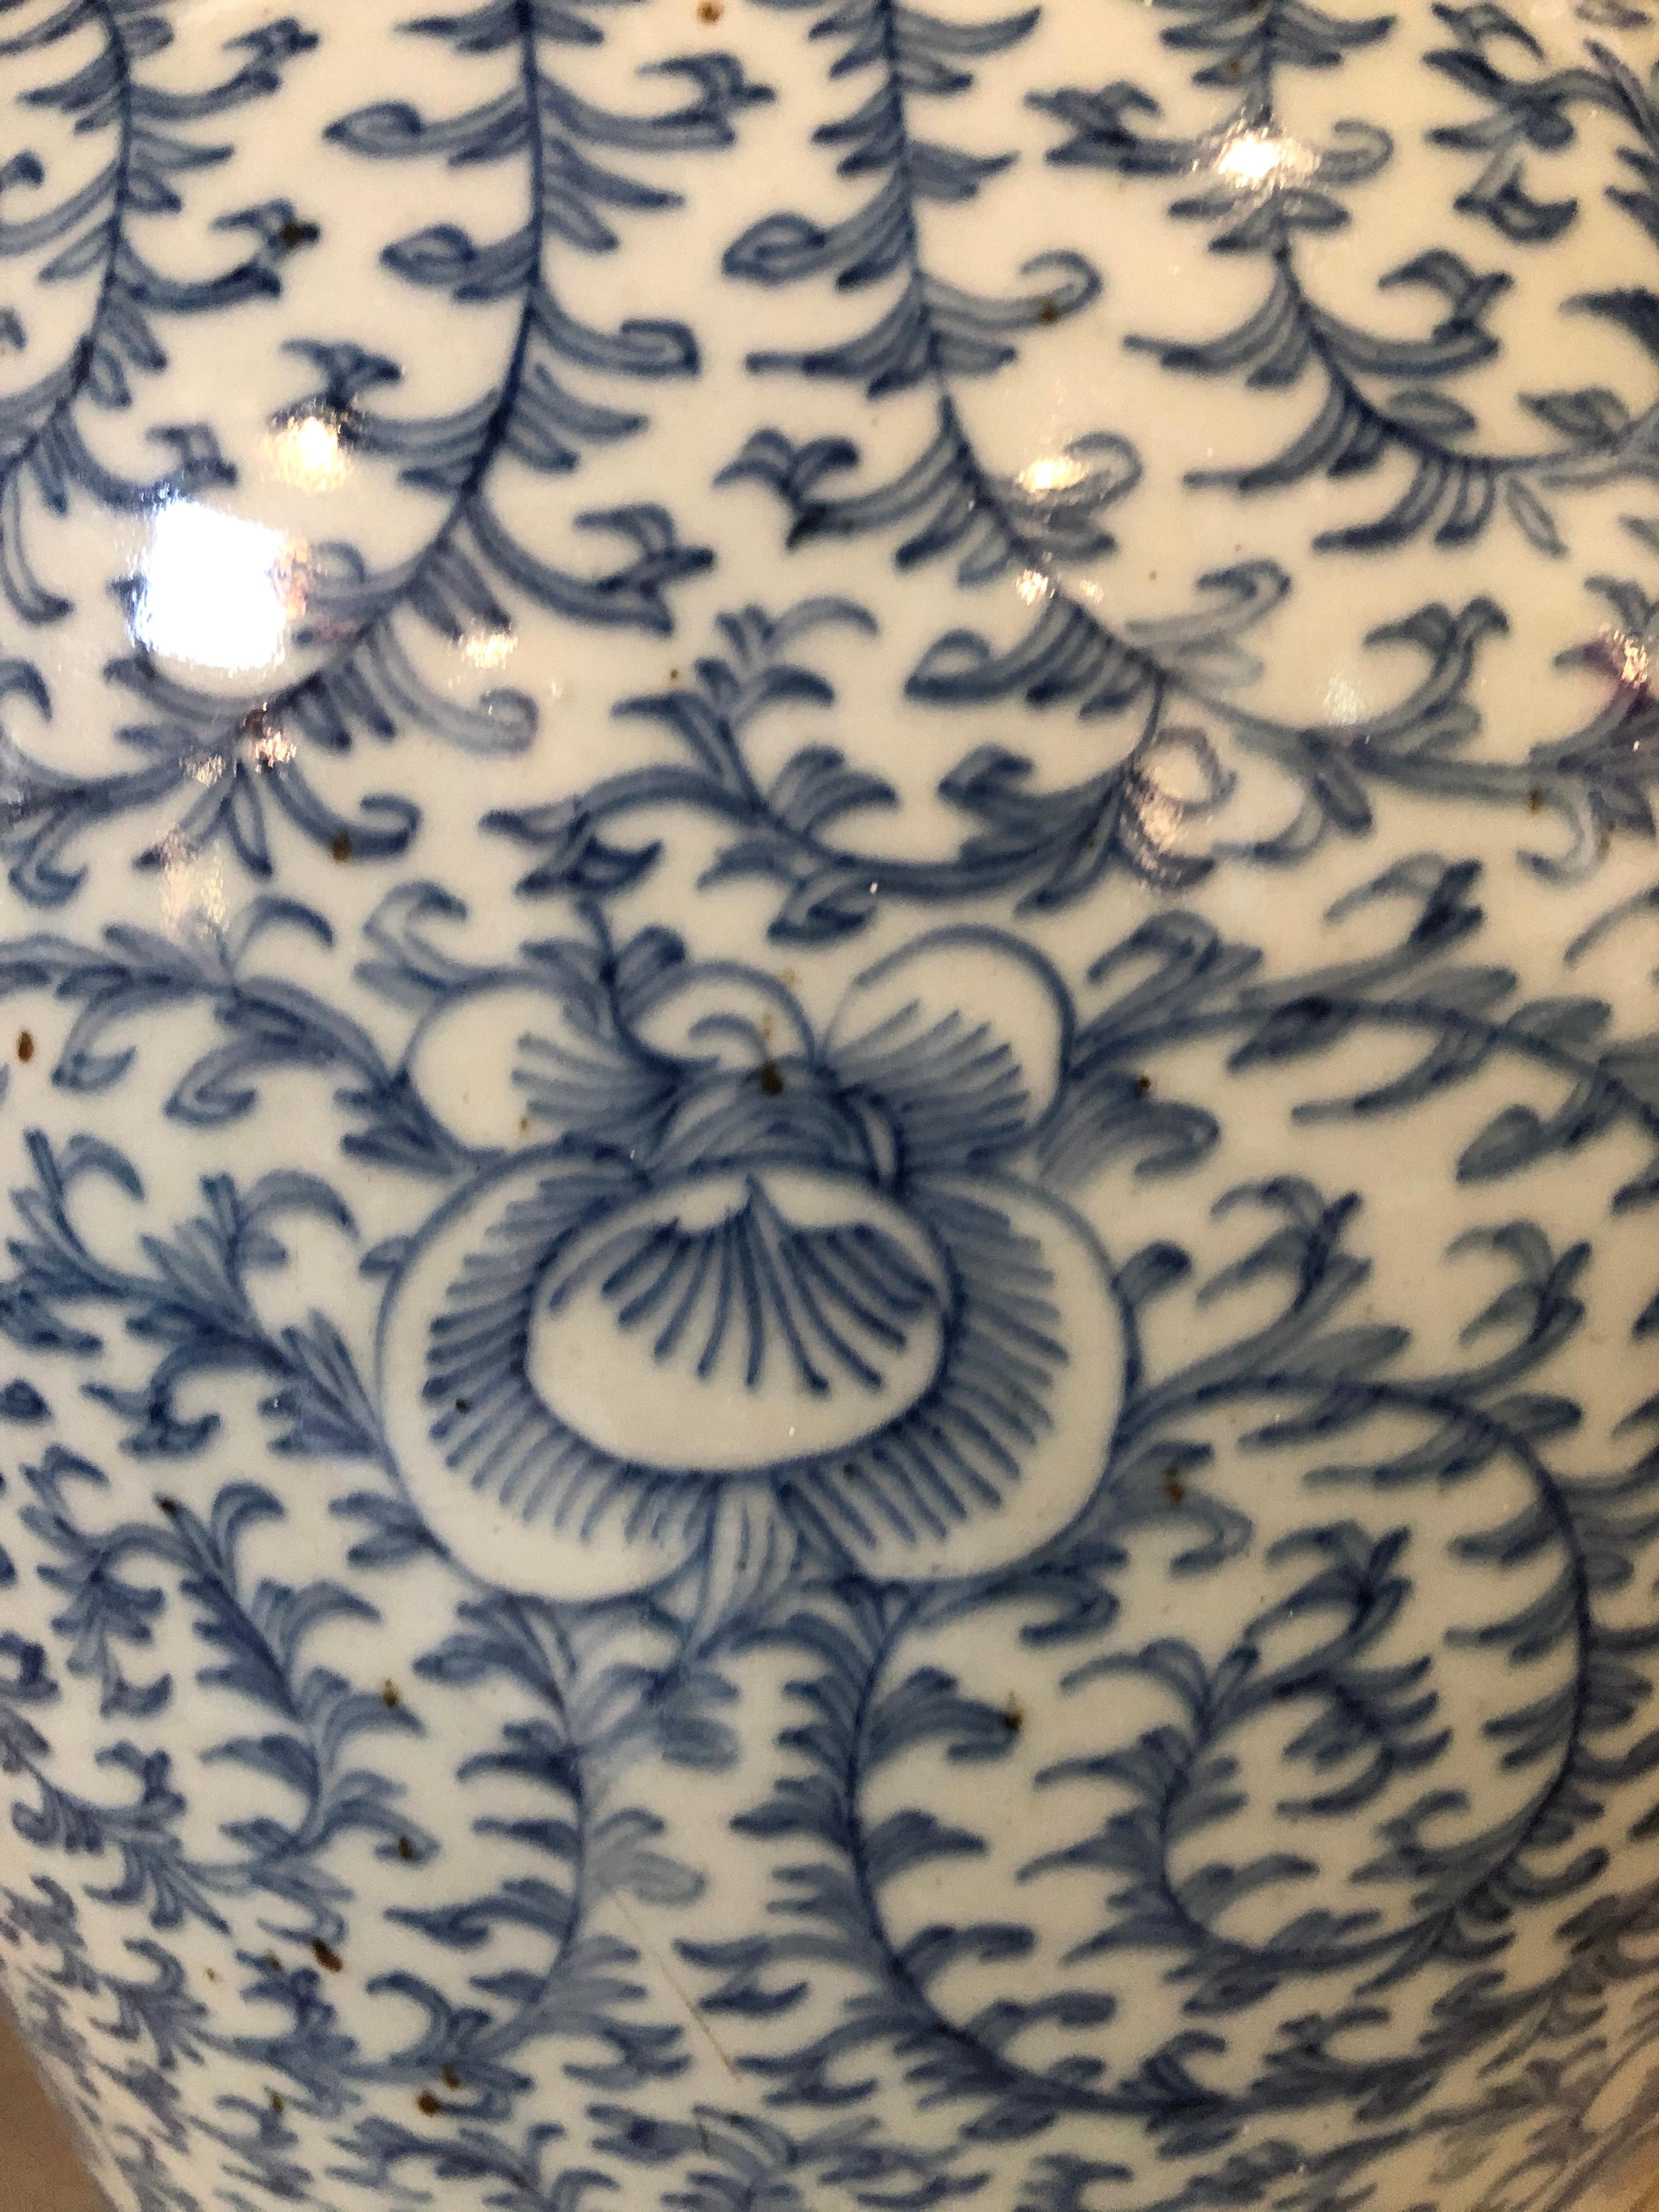 Porcelain Blue and White Chinese Lidded Ginger Jar, Vase or Urn, Signed on Bottom For Sale